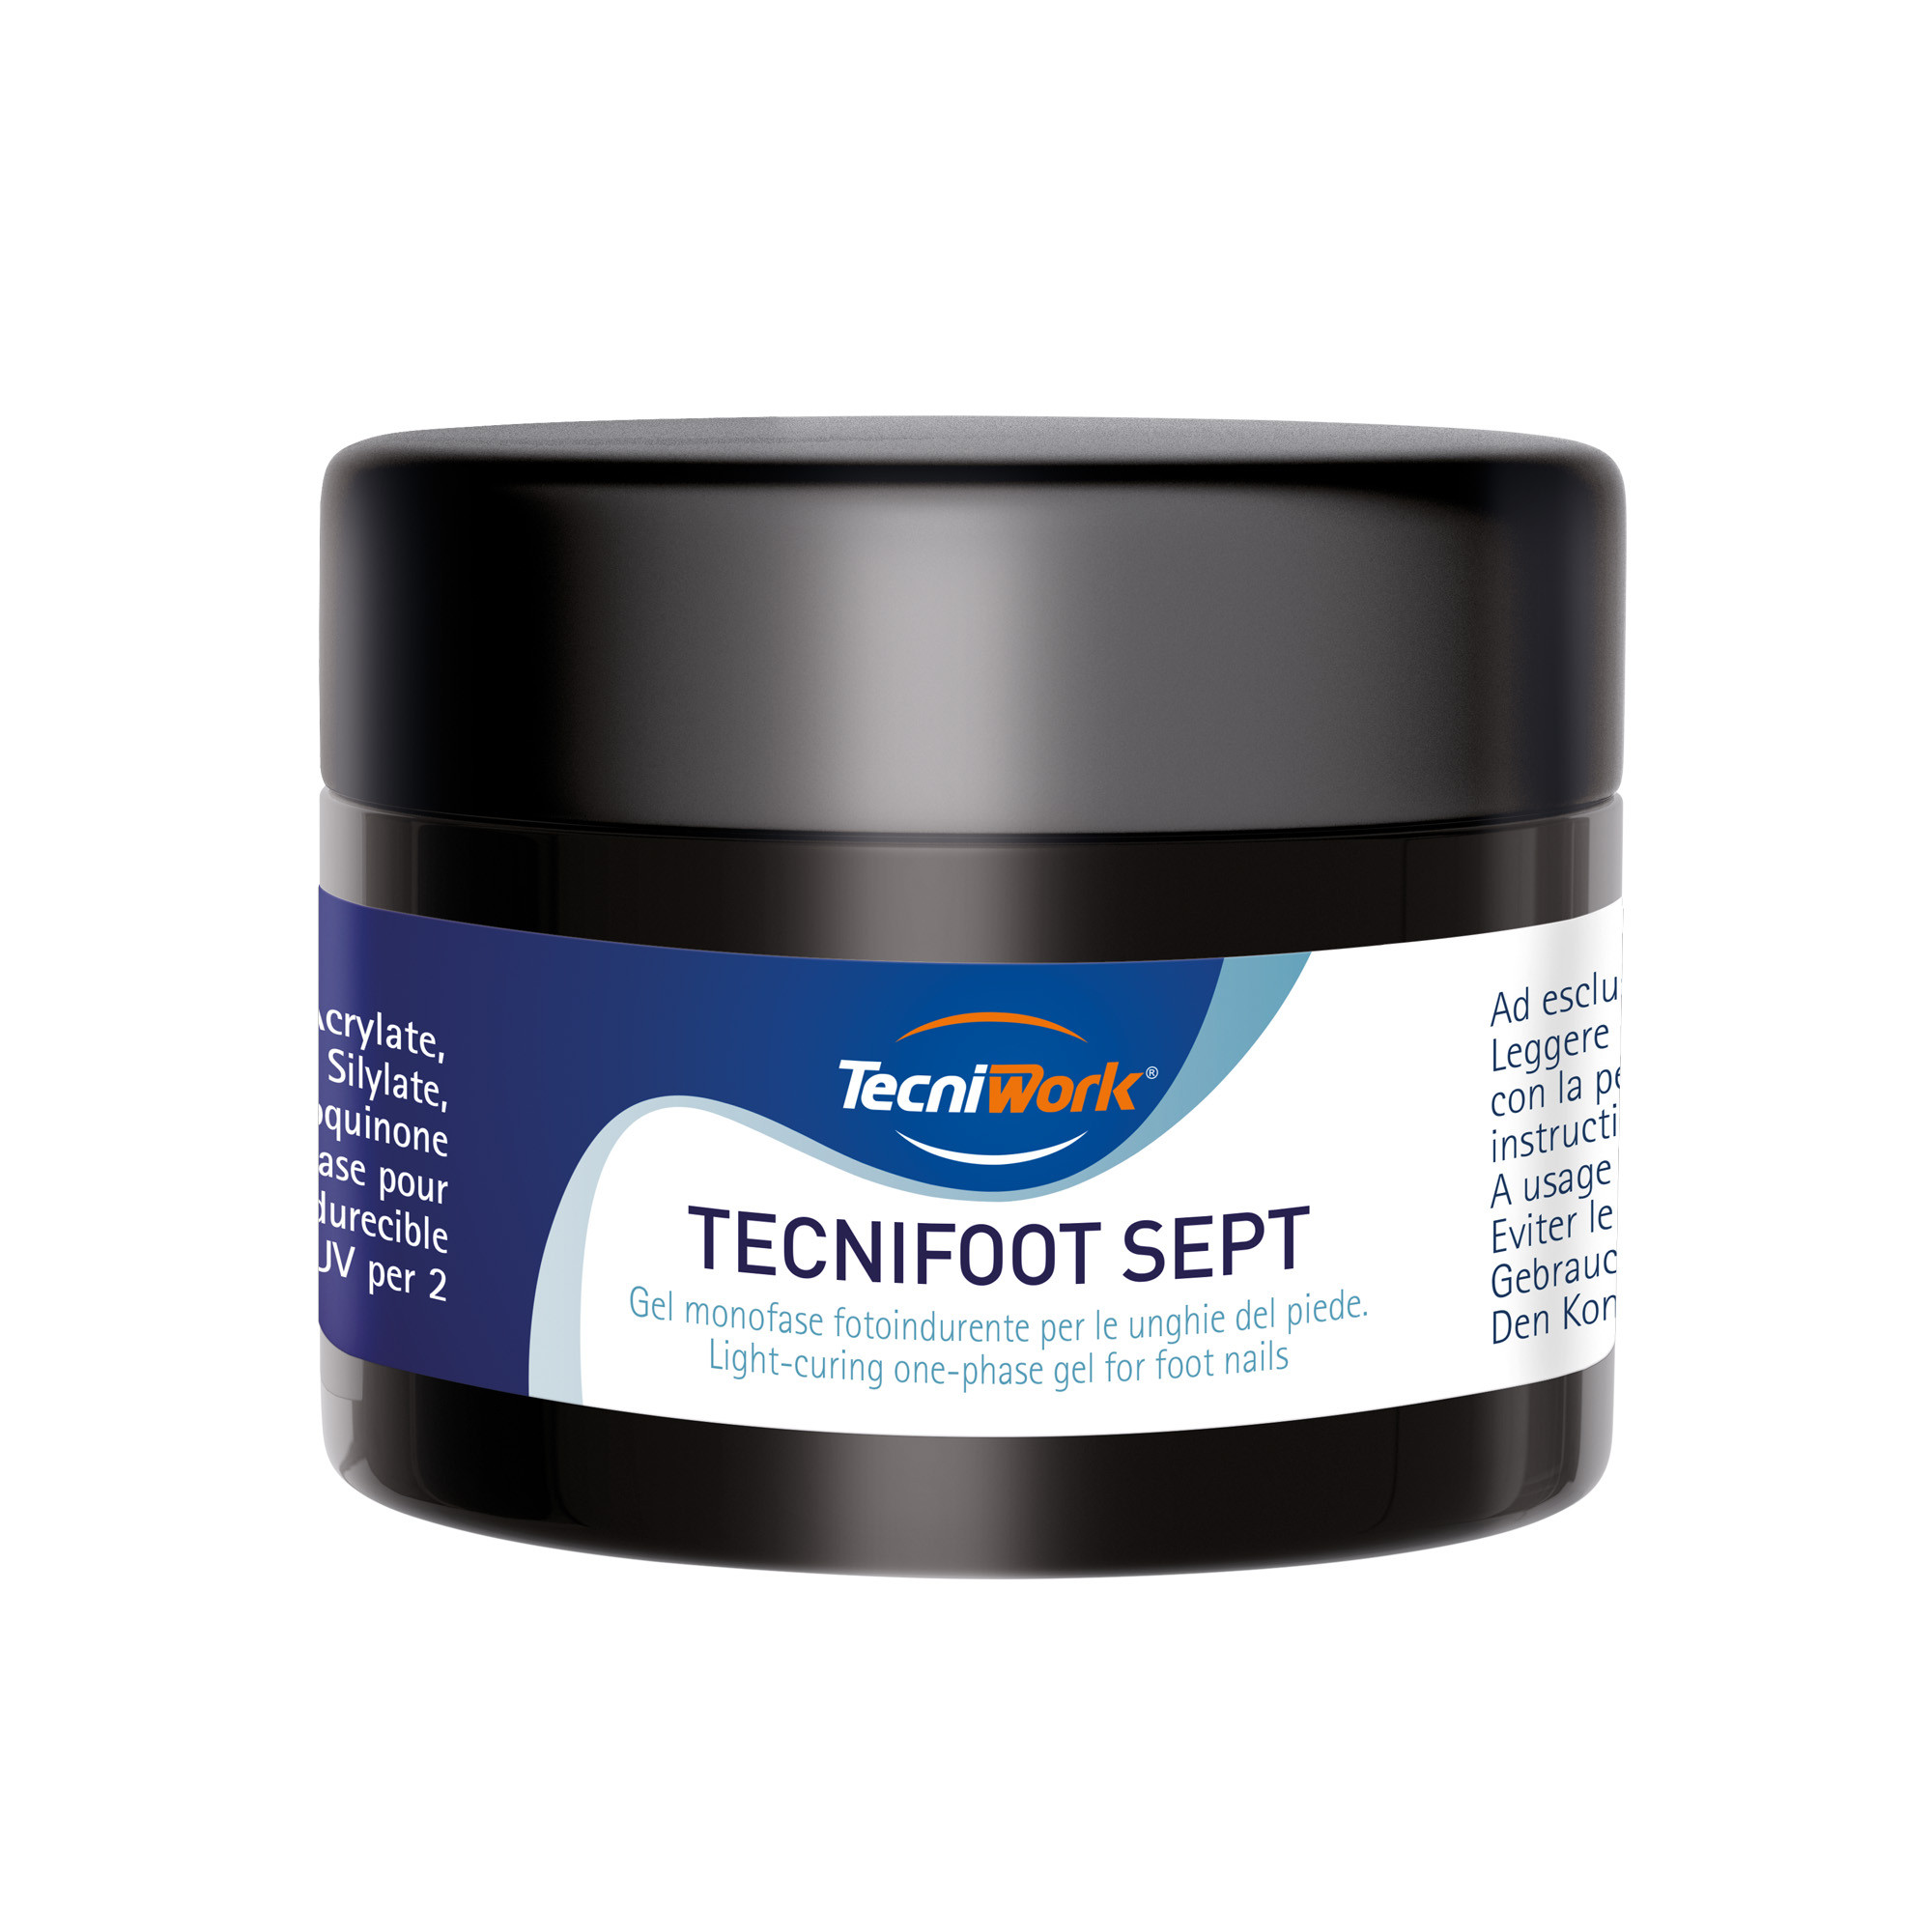 Tecnifoot Sept Rose gel auto-modelant et photopolymérisable en une seule étape 25 ml